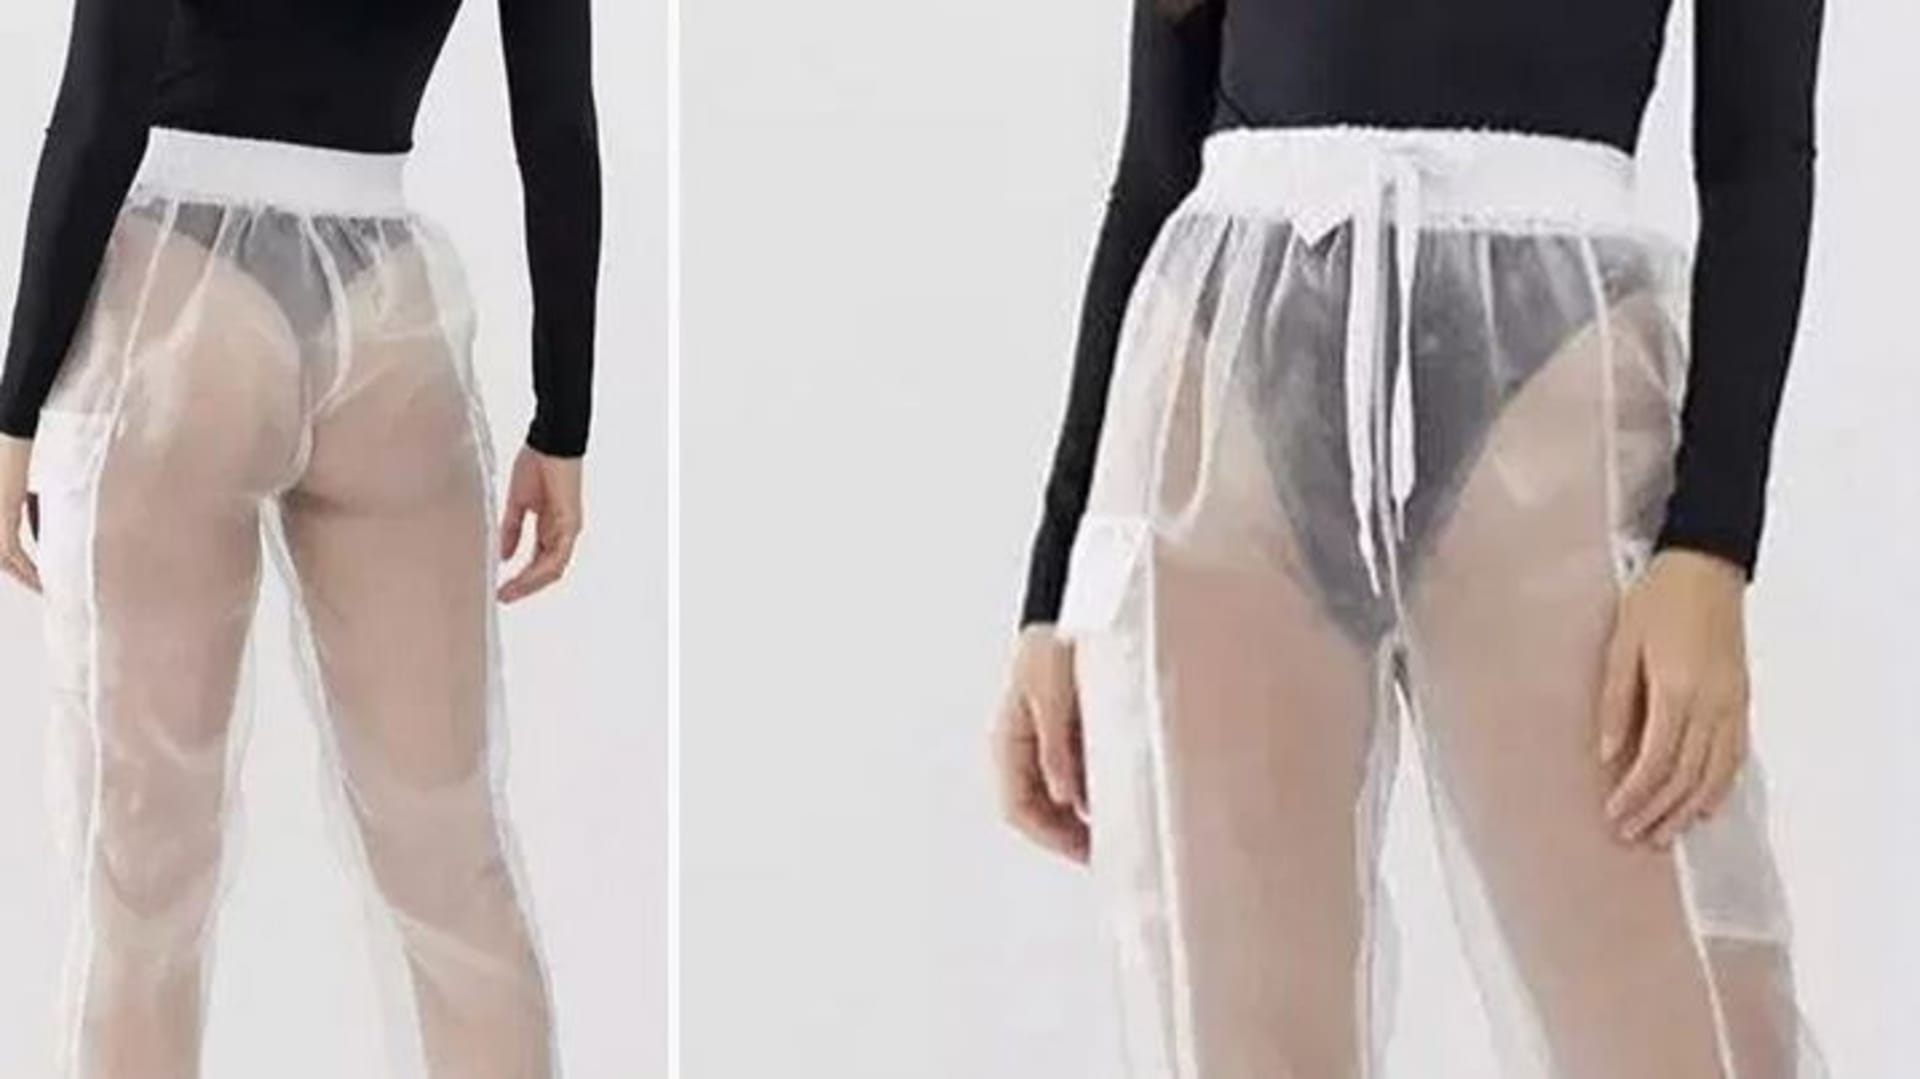 Průhledné kalhoty vypadají jako potravinová fólie 1